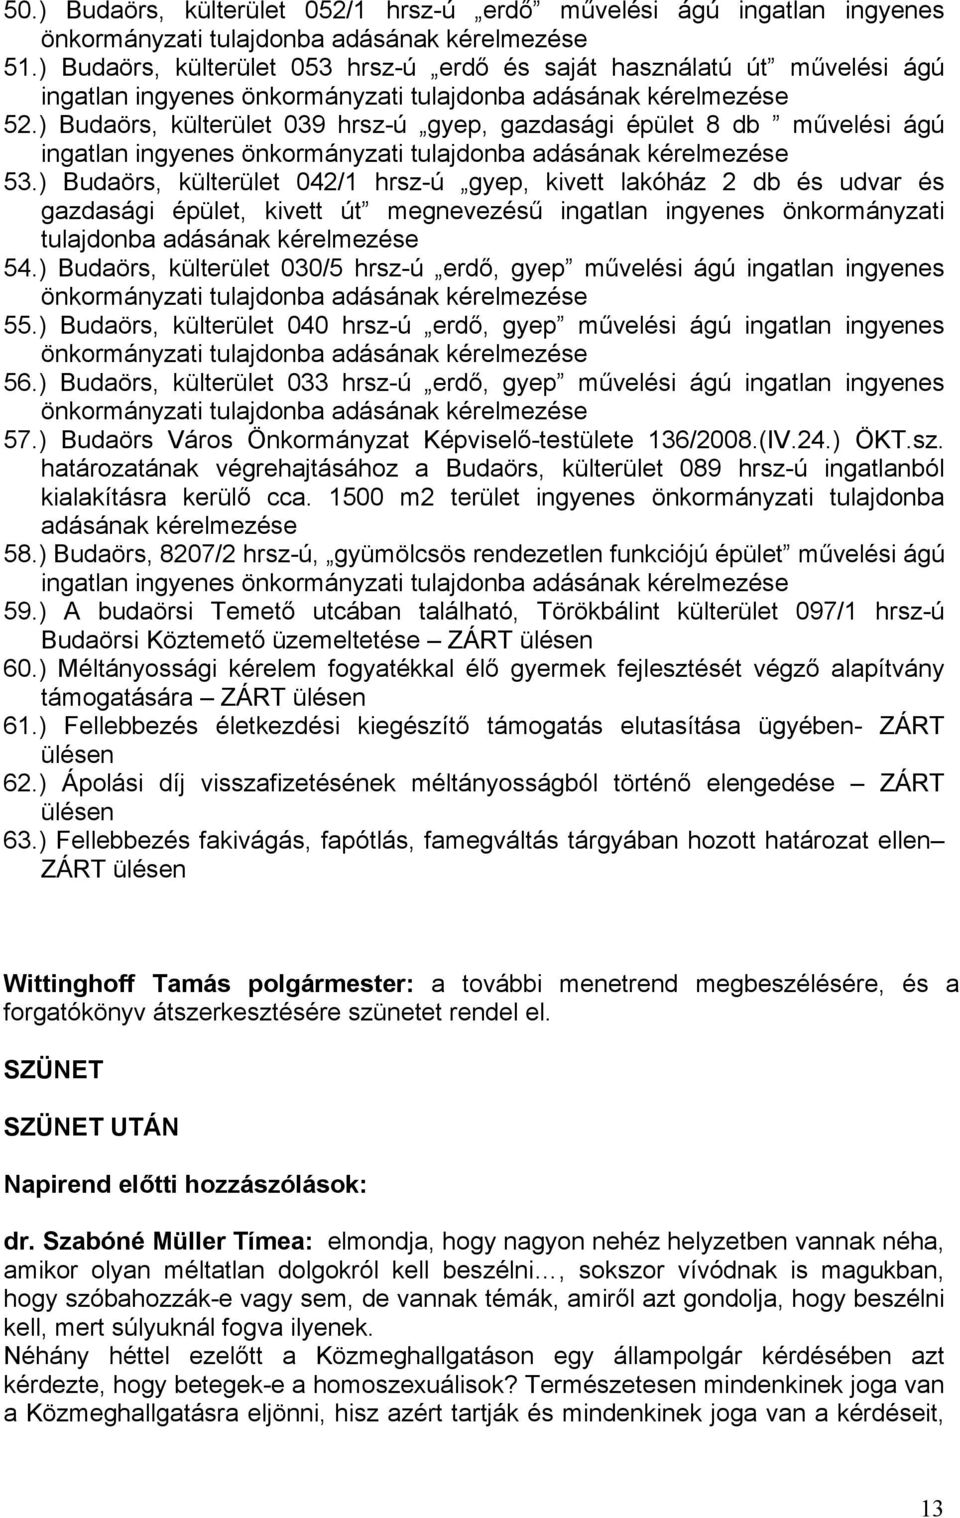 ) Budaörs, külterület 039 hrsz-ú gyep, gazdasági épület 8 db művelési ágú ingatlan ingyenes önkormányzati tulajdonba adásának kérelmezése 53.